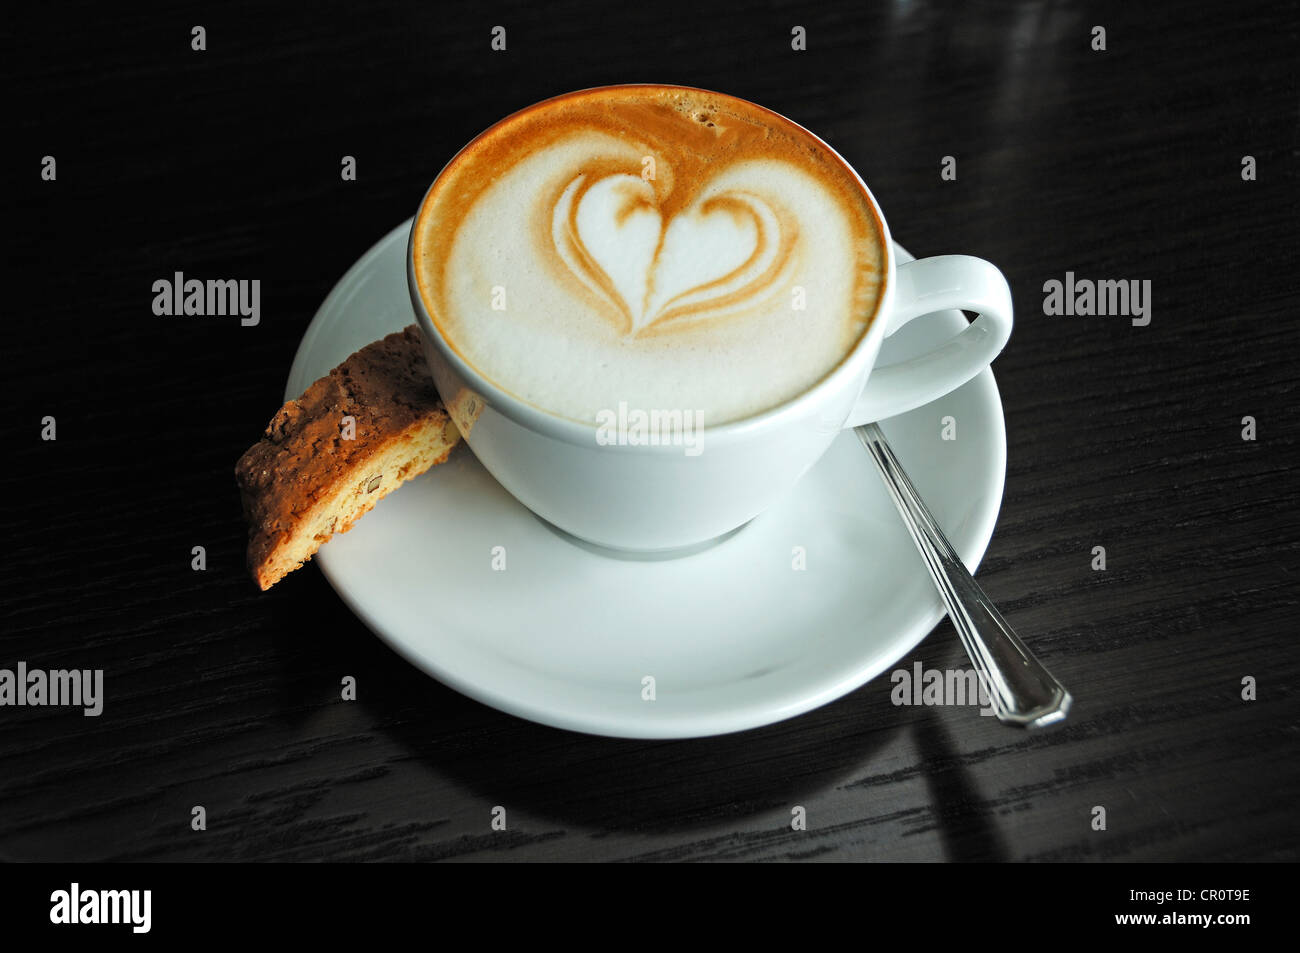 Tasse de cappuccino décoré d'un coeur, et un tableau noir sur un biscotti Banque D'Images